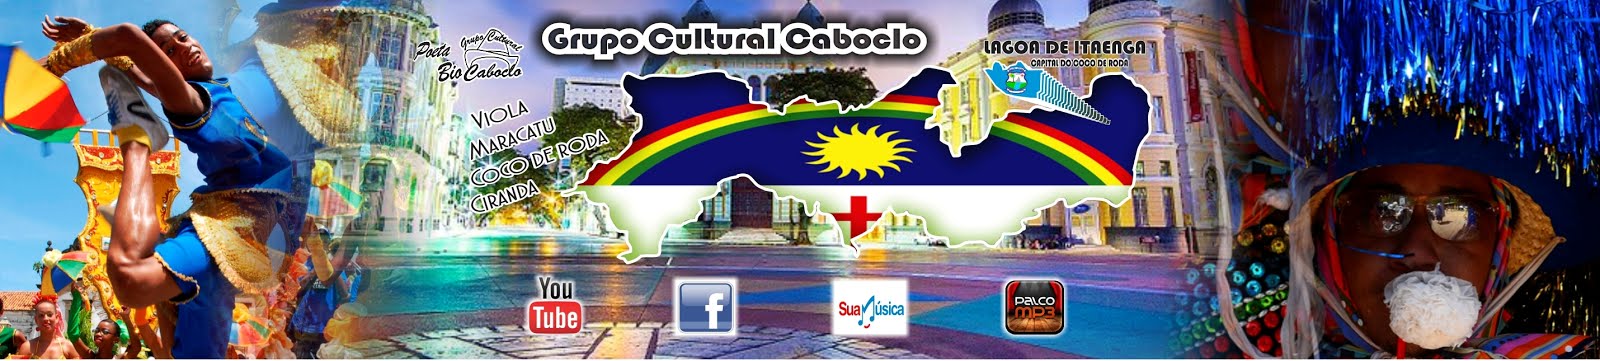 Grupo Cultural Caboclo